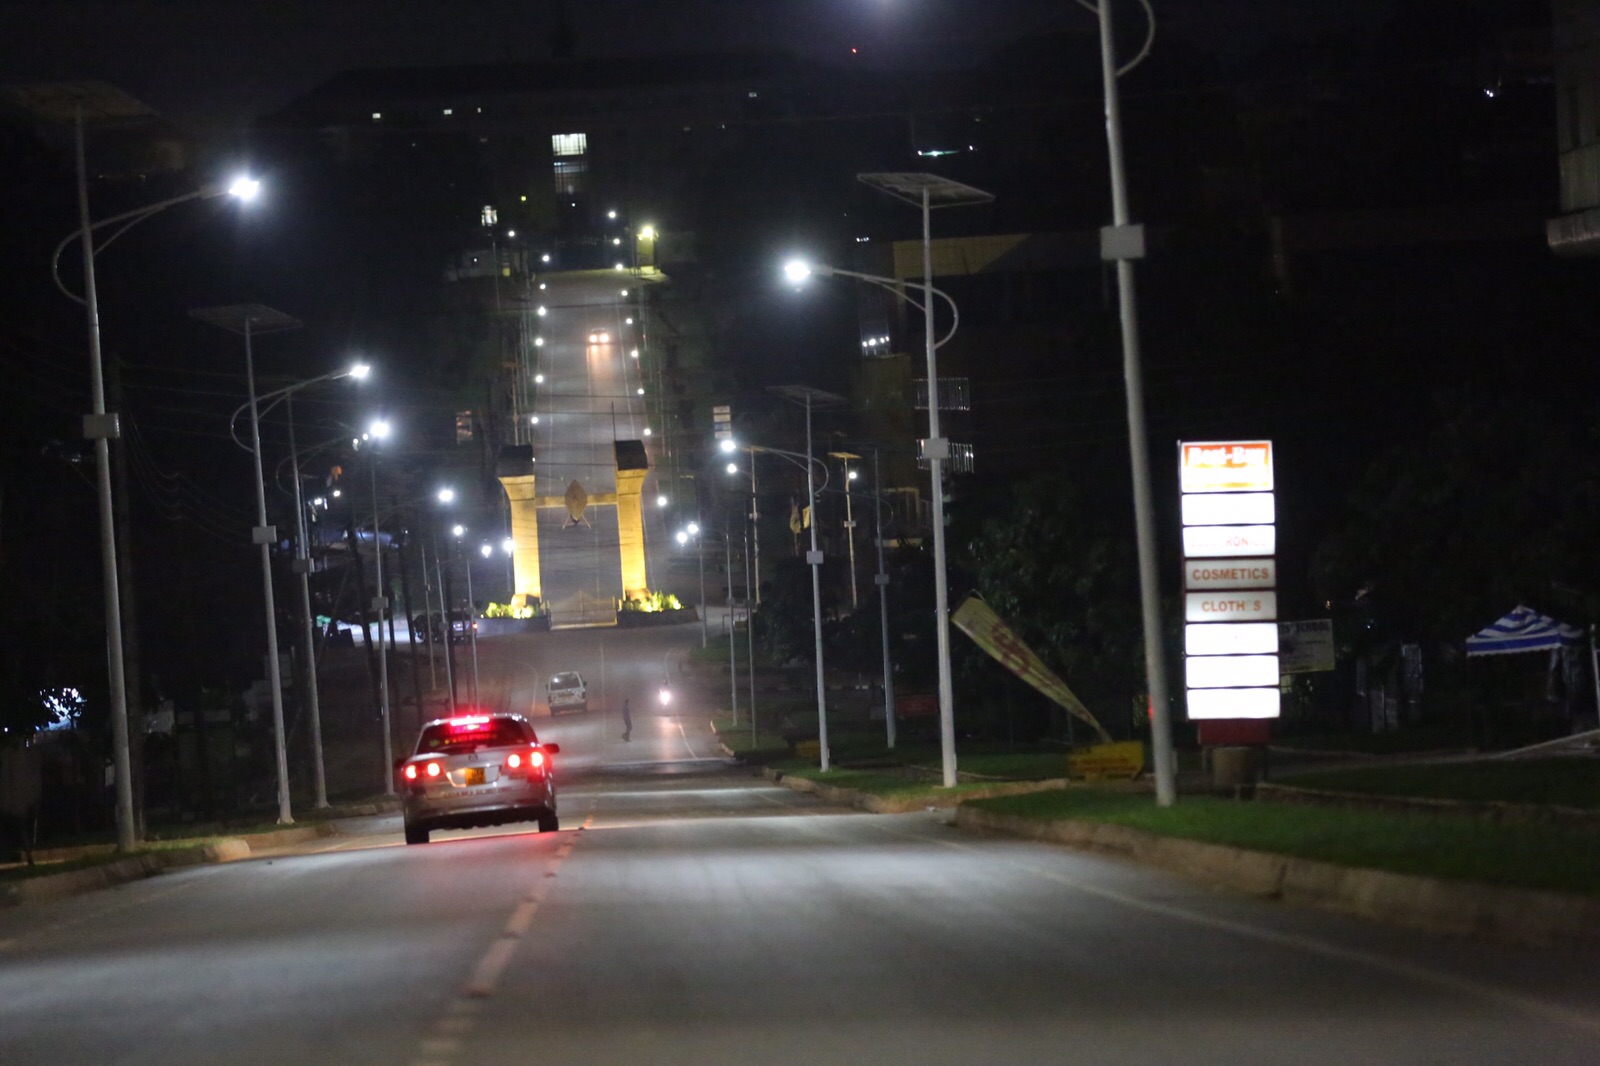 Buganda Nantawetwa Roundabout Monument